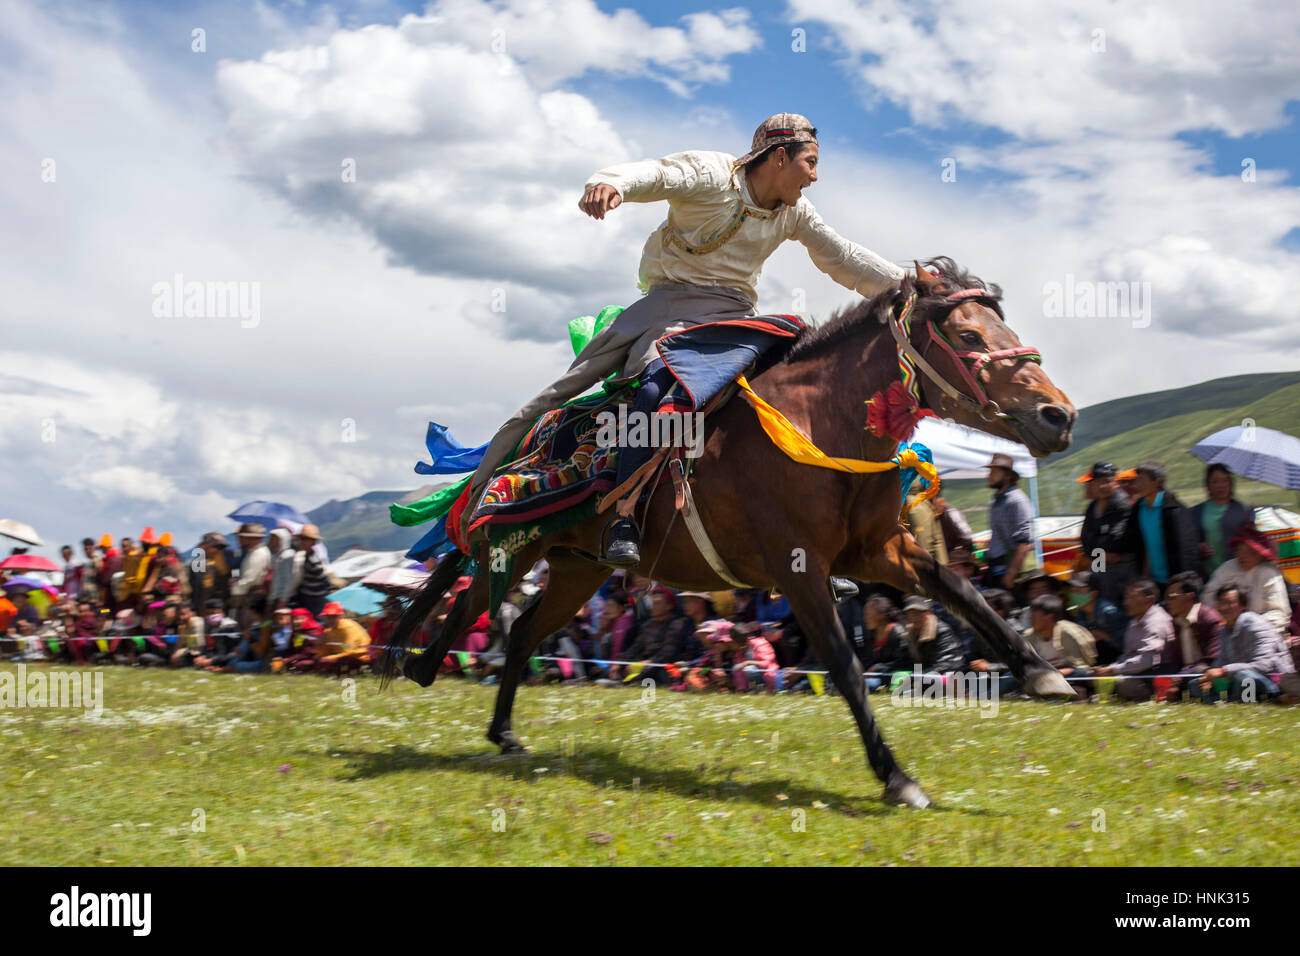 Khampa Mann Reiten während dem Manigango Pferdefest in der tibetischen Hochebene in Sichuan, China. Stockfoto